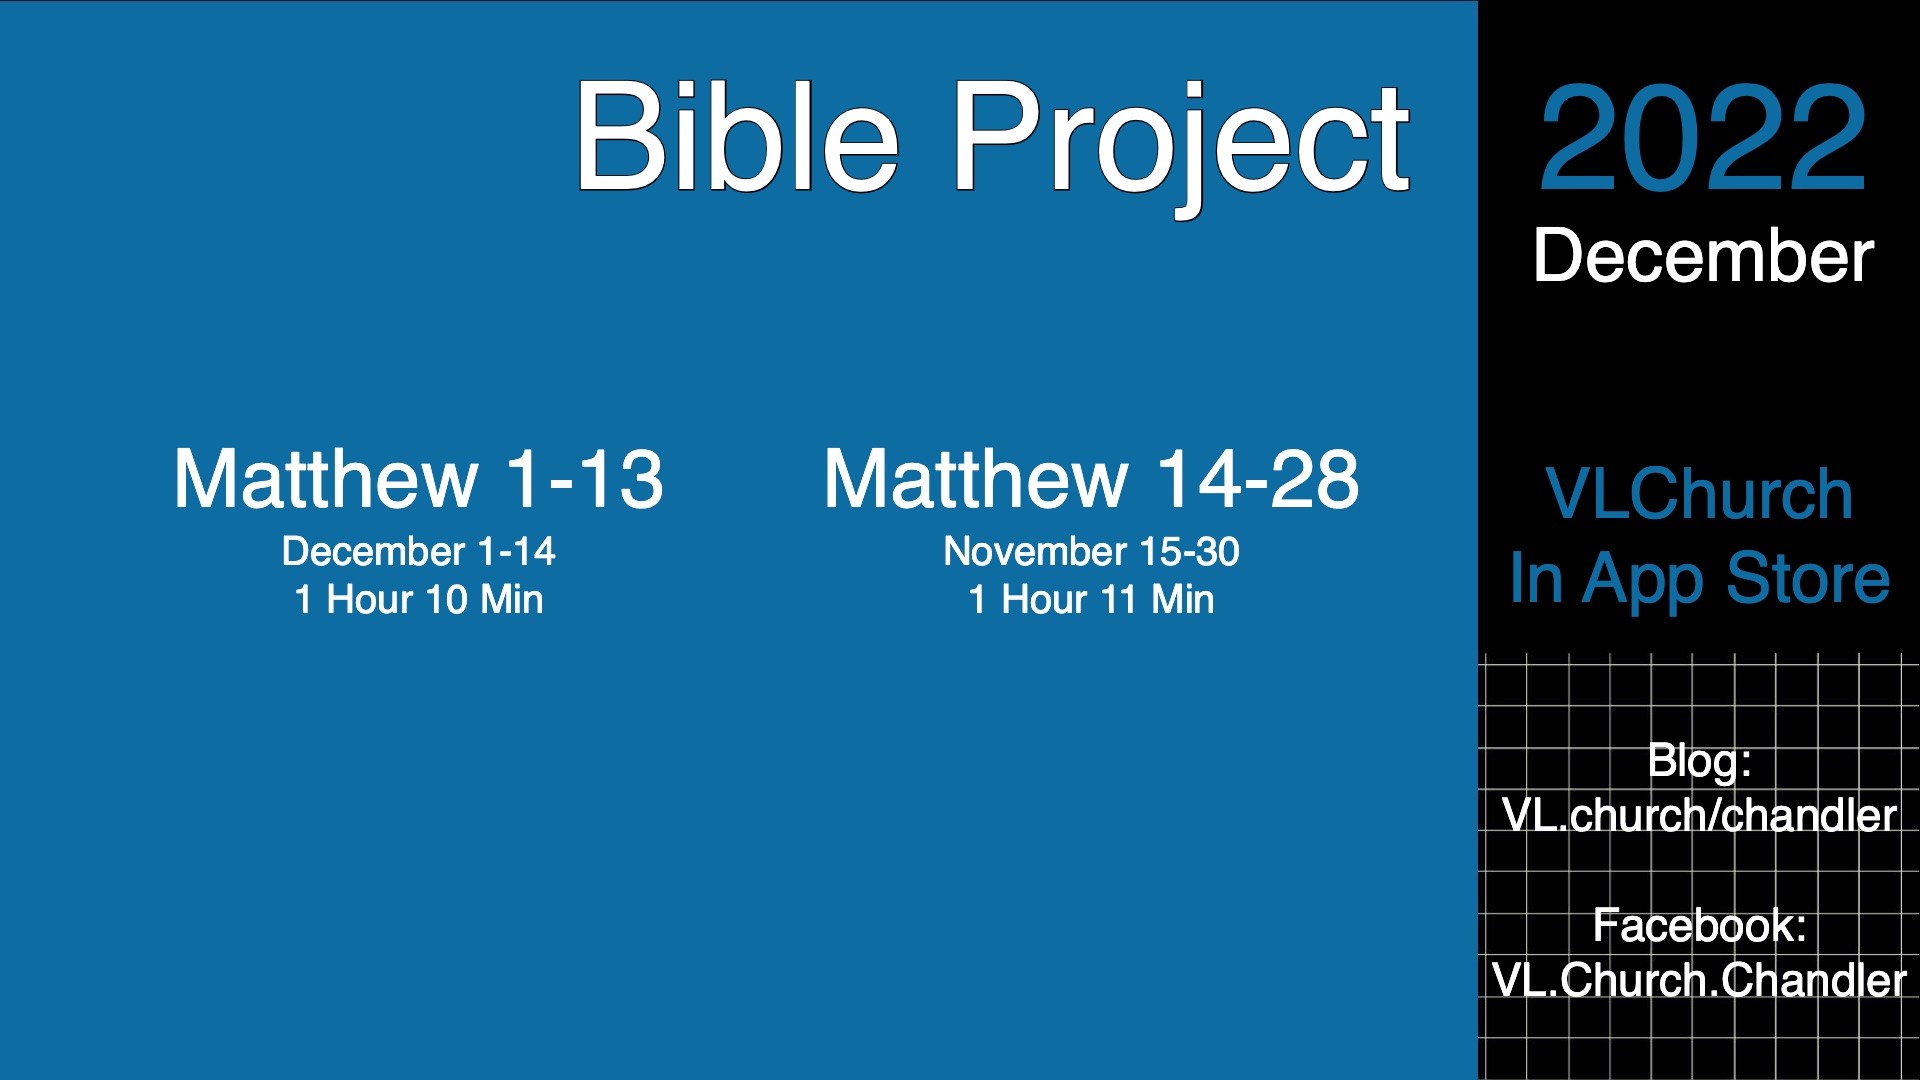 Video: Matthew 14-28